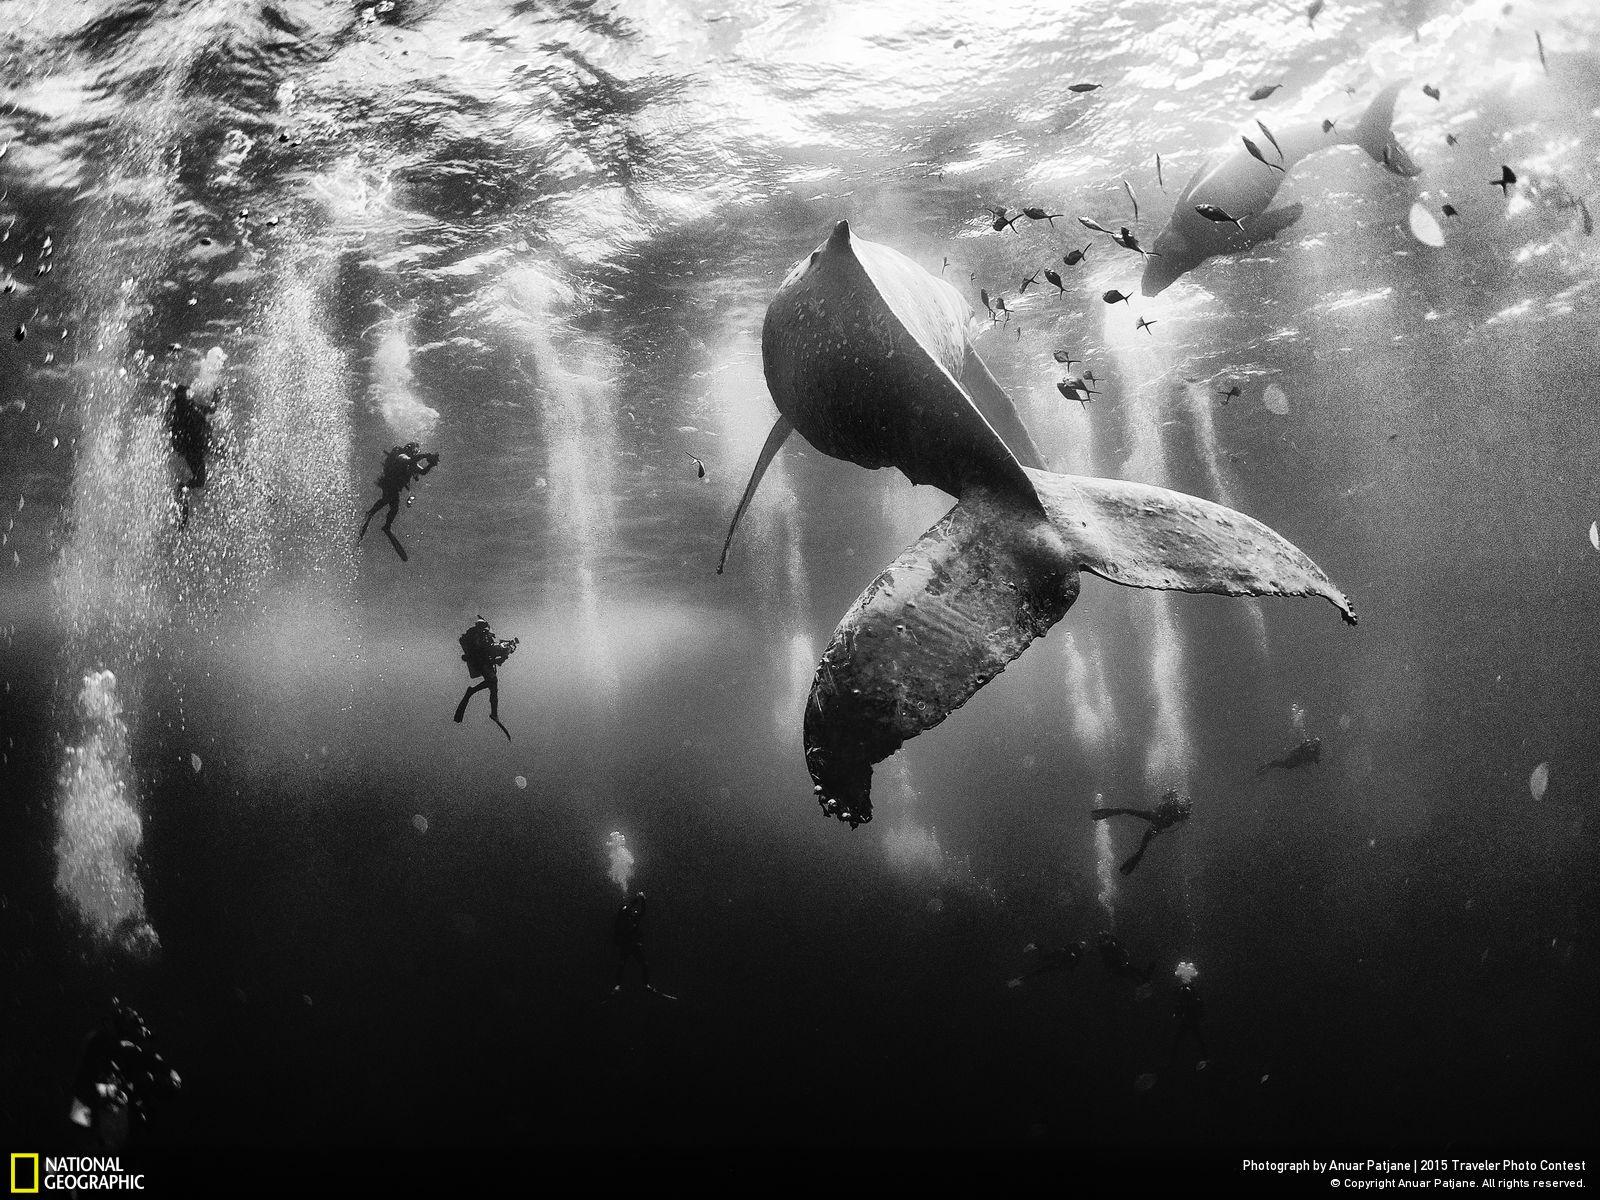 الصور الفائزة في مسابقة ناشيونال جيوغرافيك 2015 - همس الحيتان 